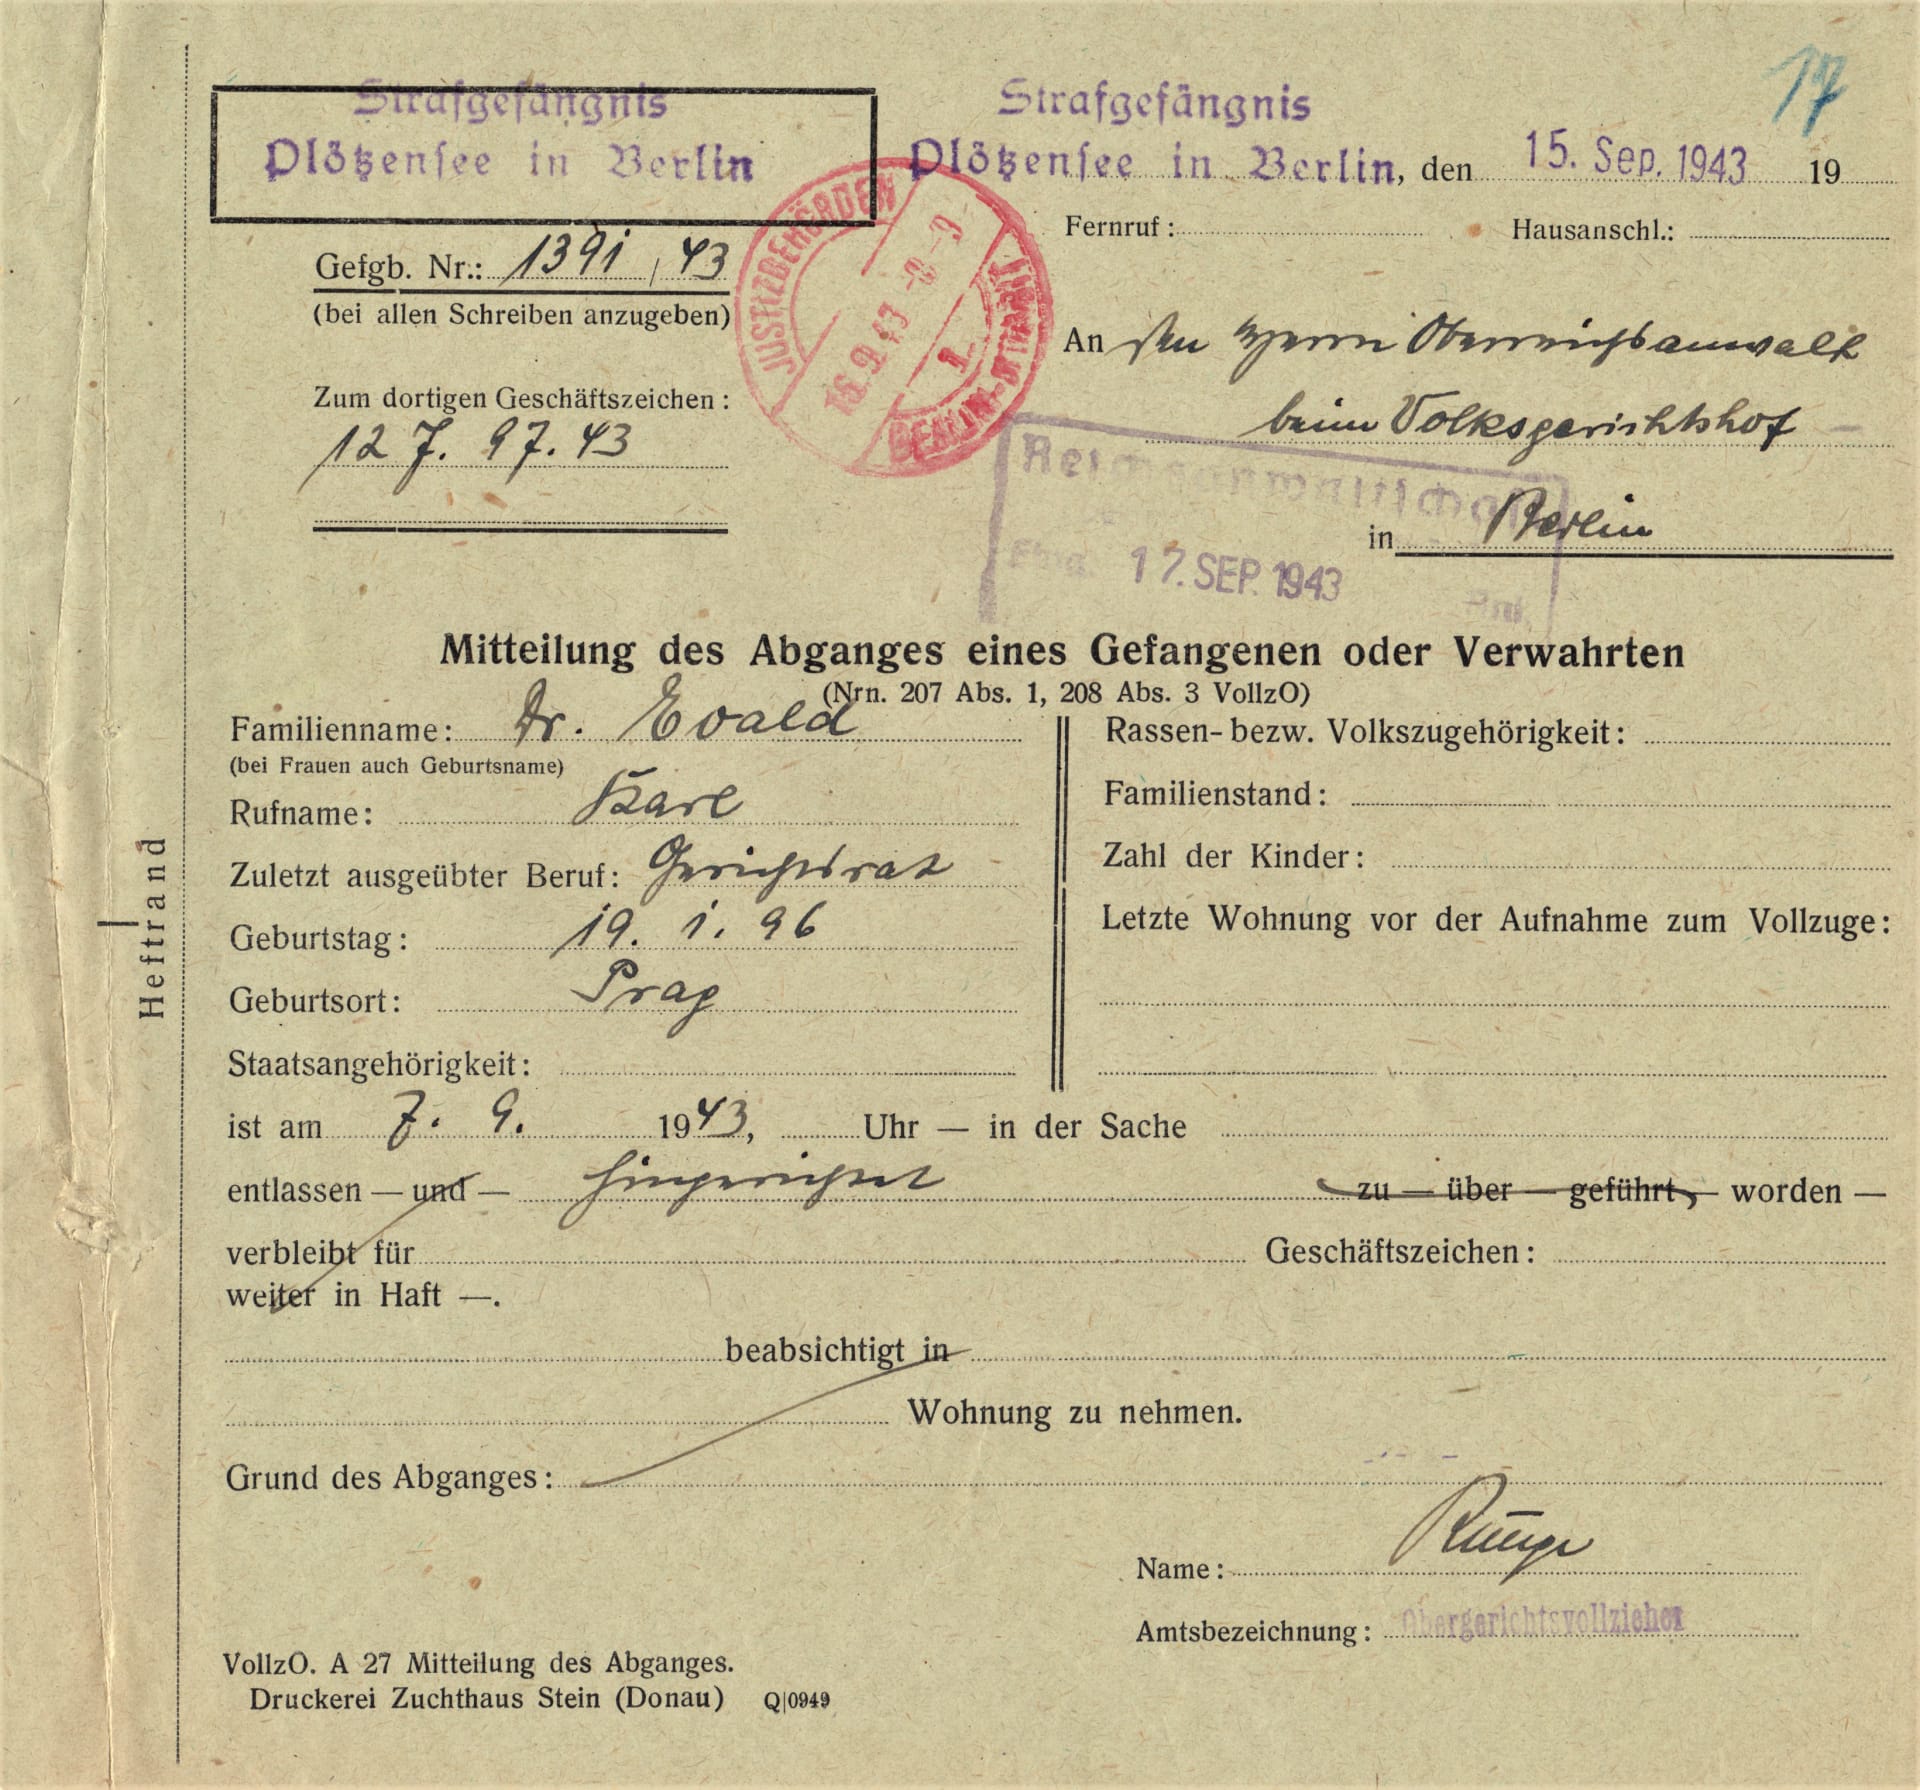 Oznámení o „odchodu vězně“, v tomto případě potvrzení o popravě Karla Evalda z Obce sokolské v odboji, popraven v Plötzensee 7. 9. 1943